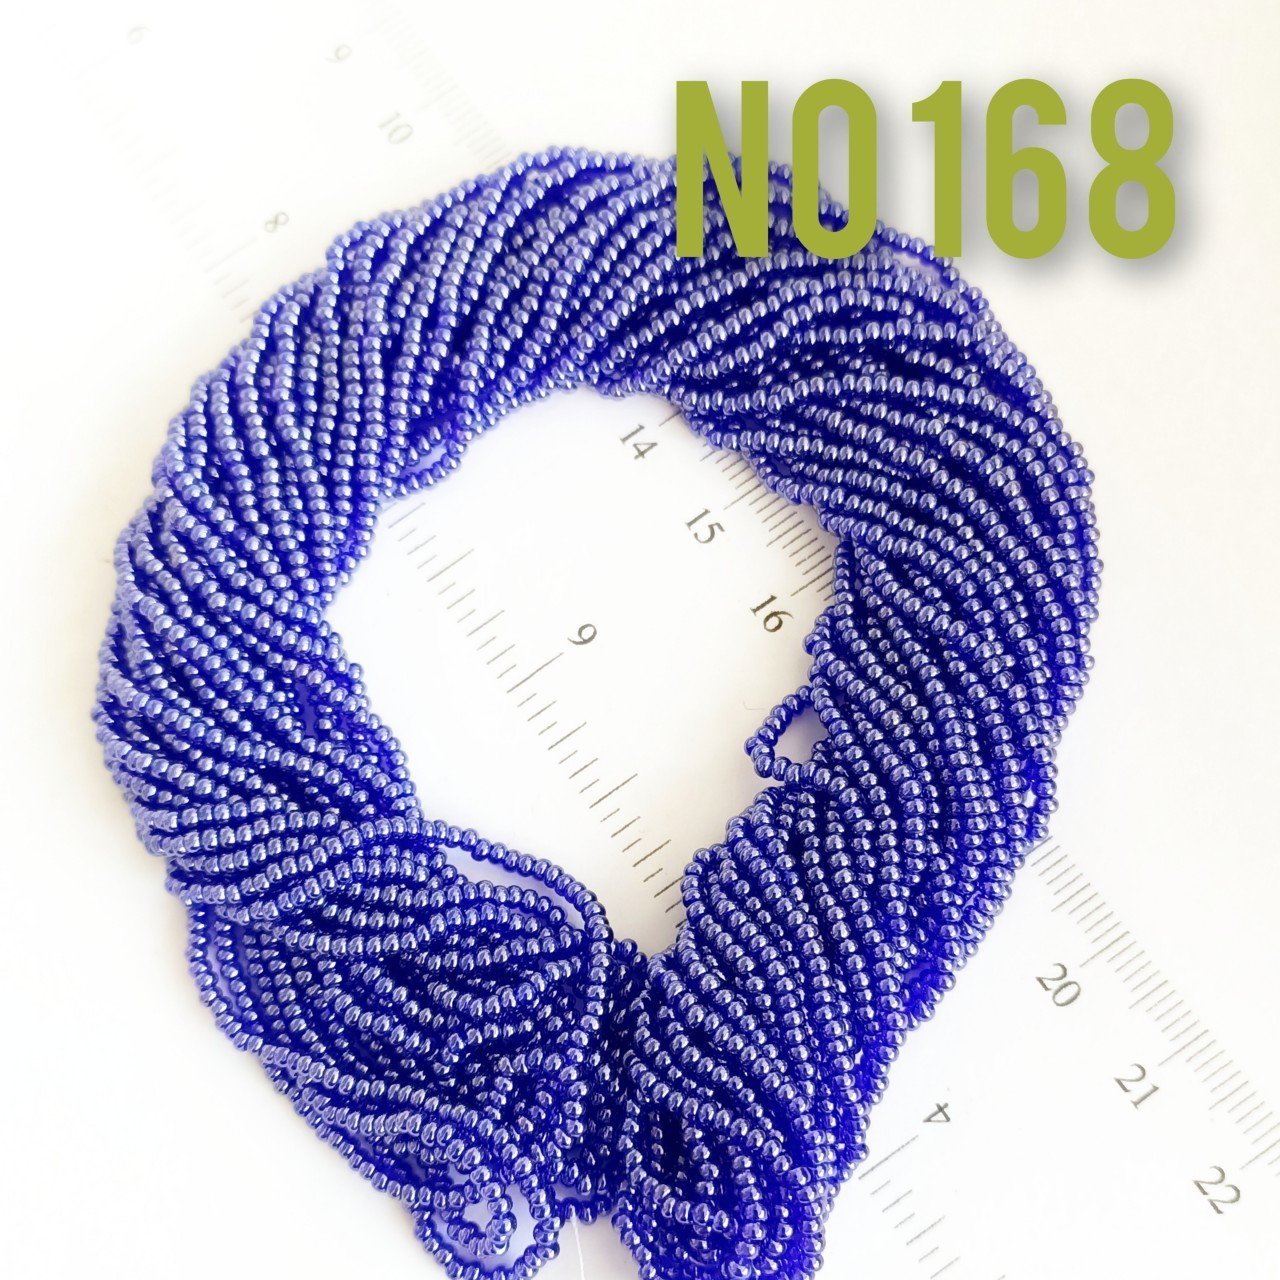 No: 168 Parlak Kobalt Mavi Preciosa Dizi Kum Boncuk 11/0